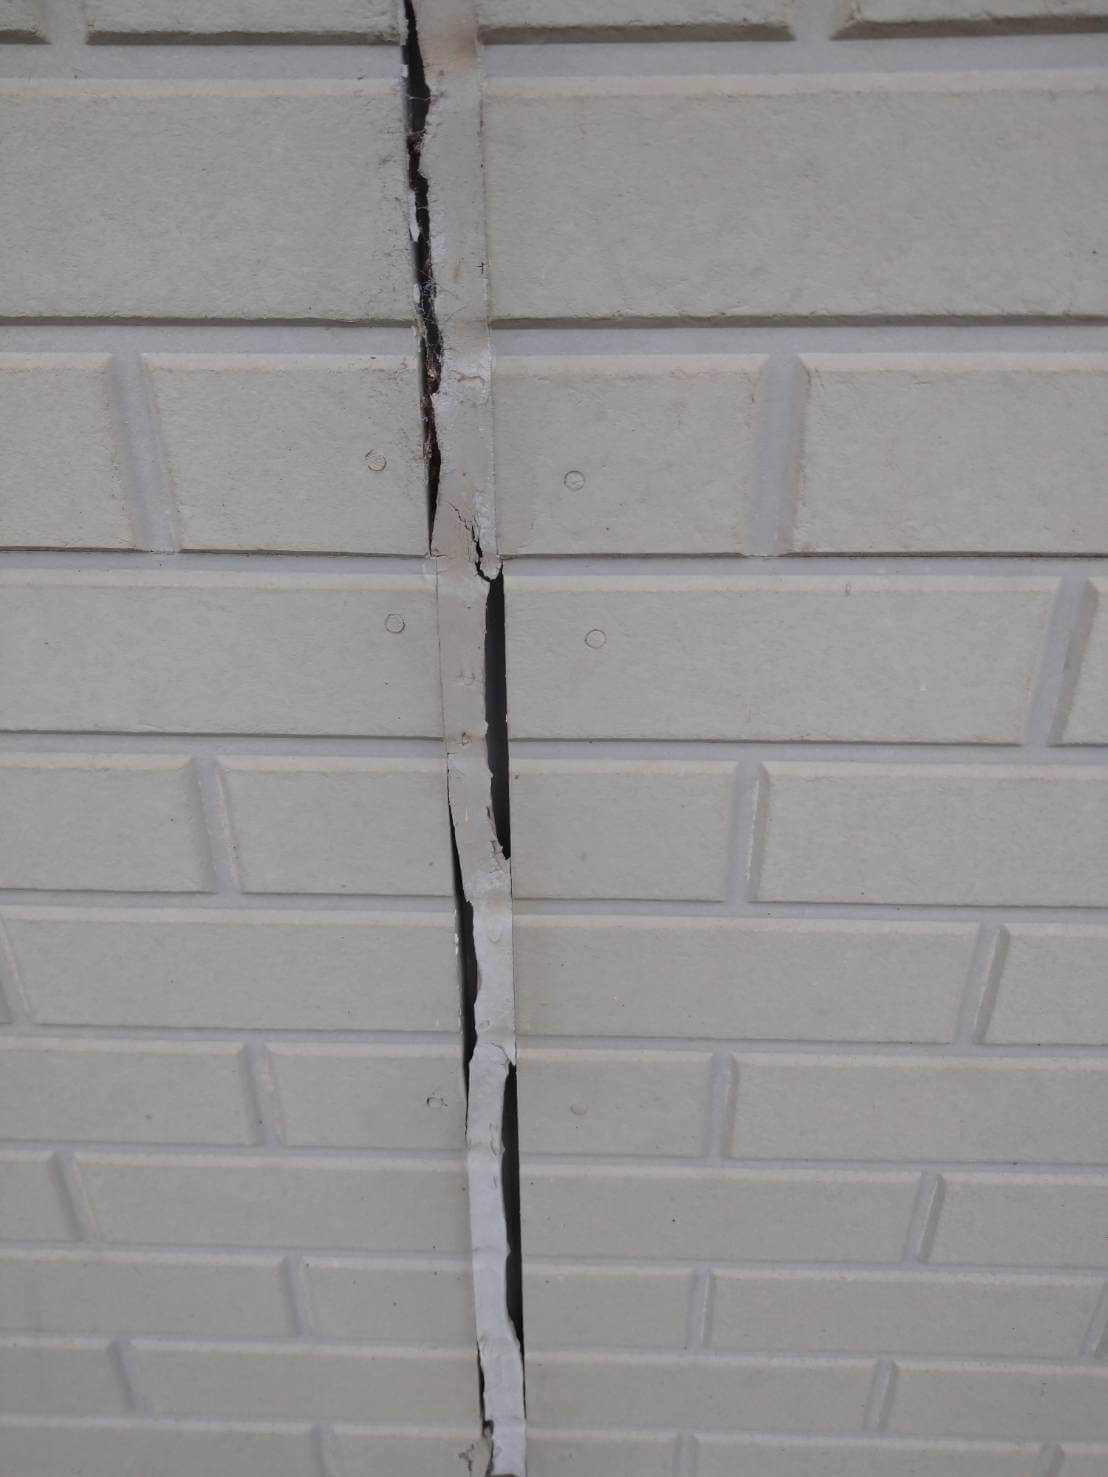 外壁のコーキング部分にひび割れが確認できる。